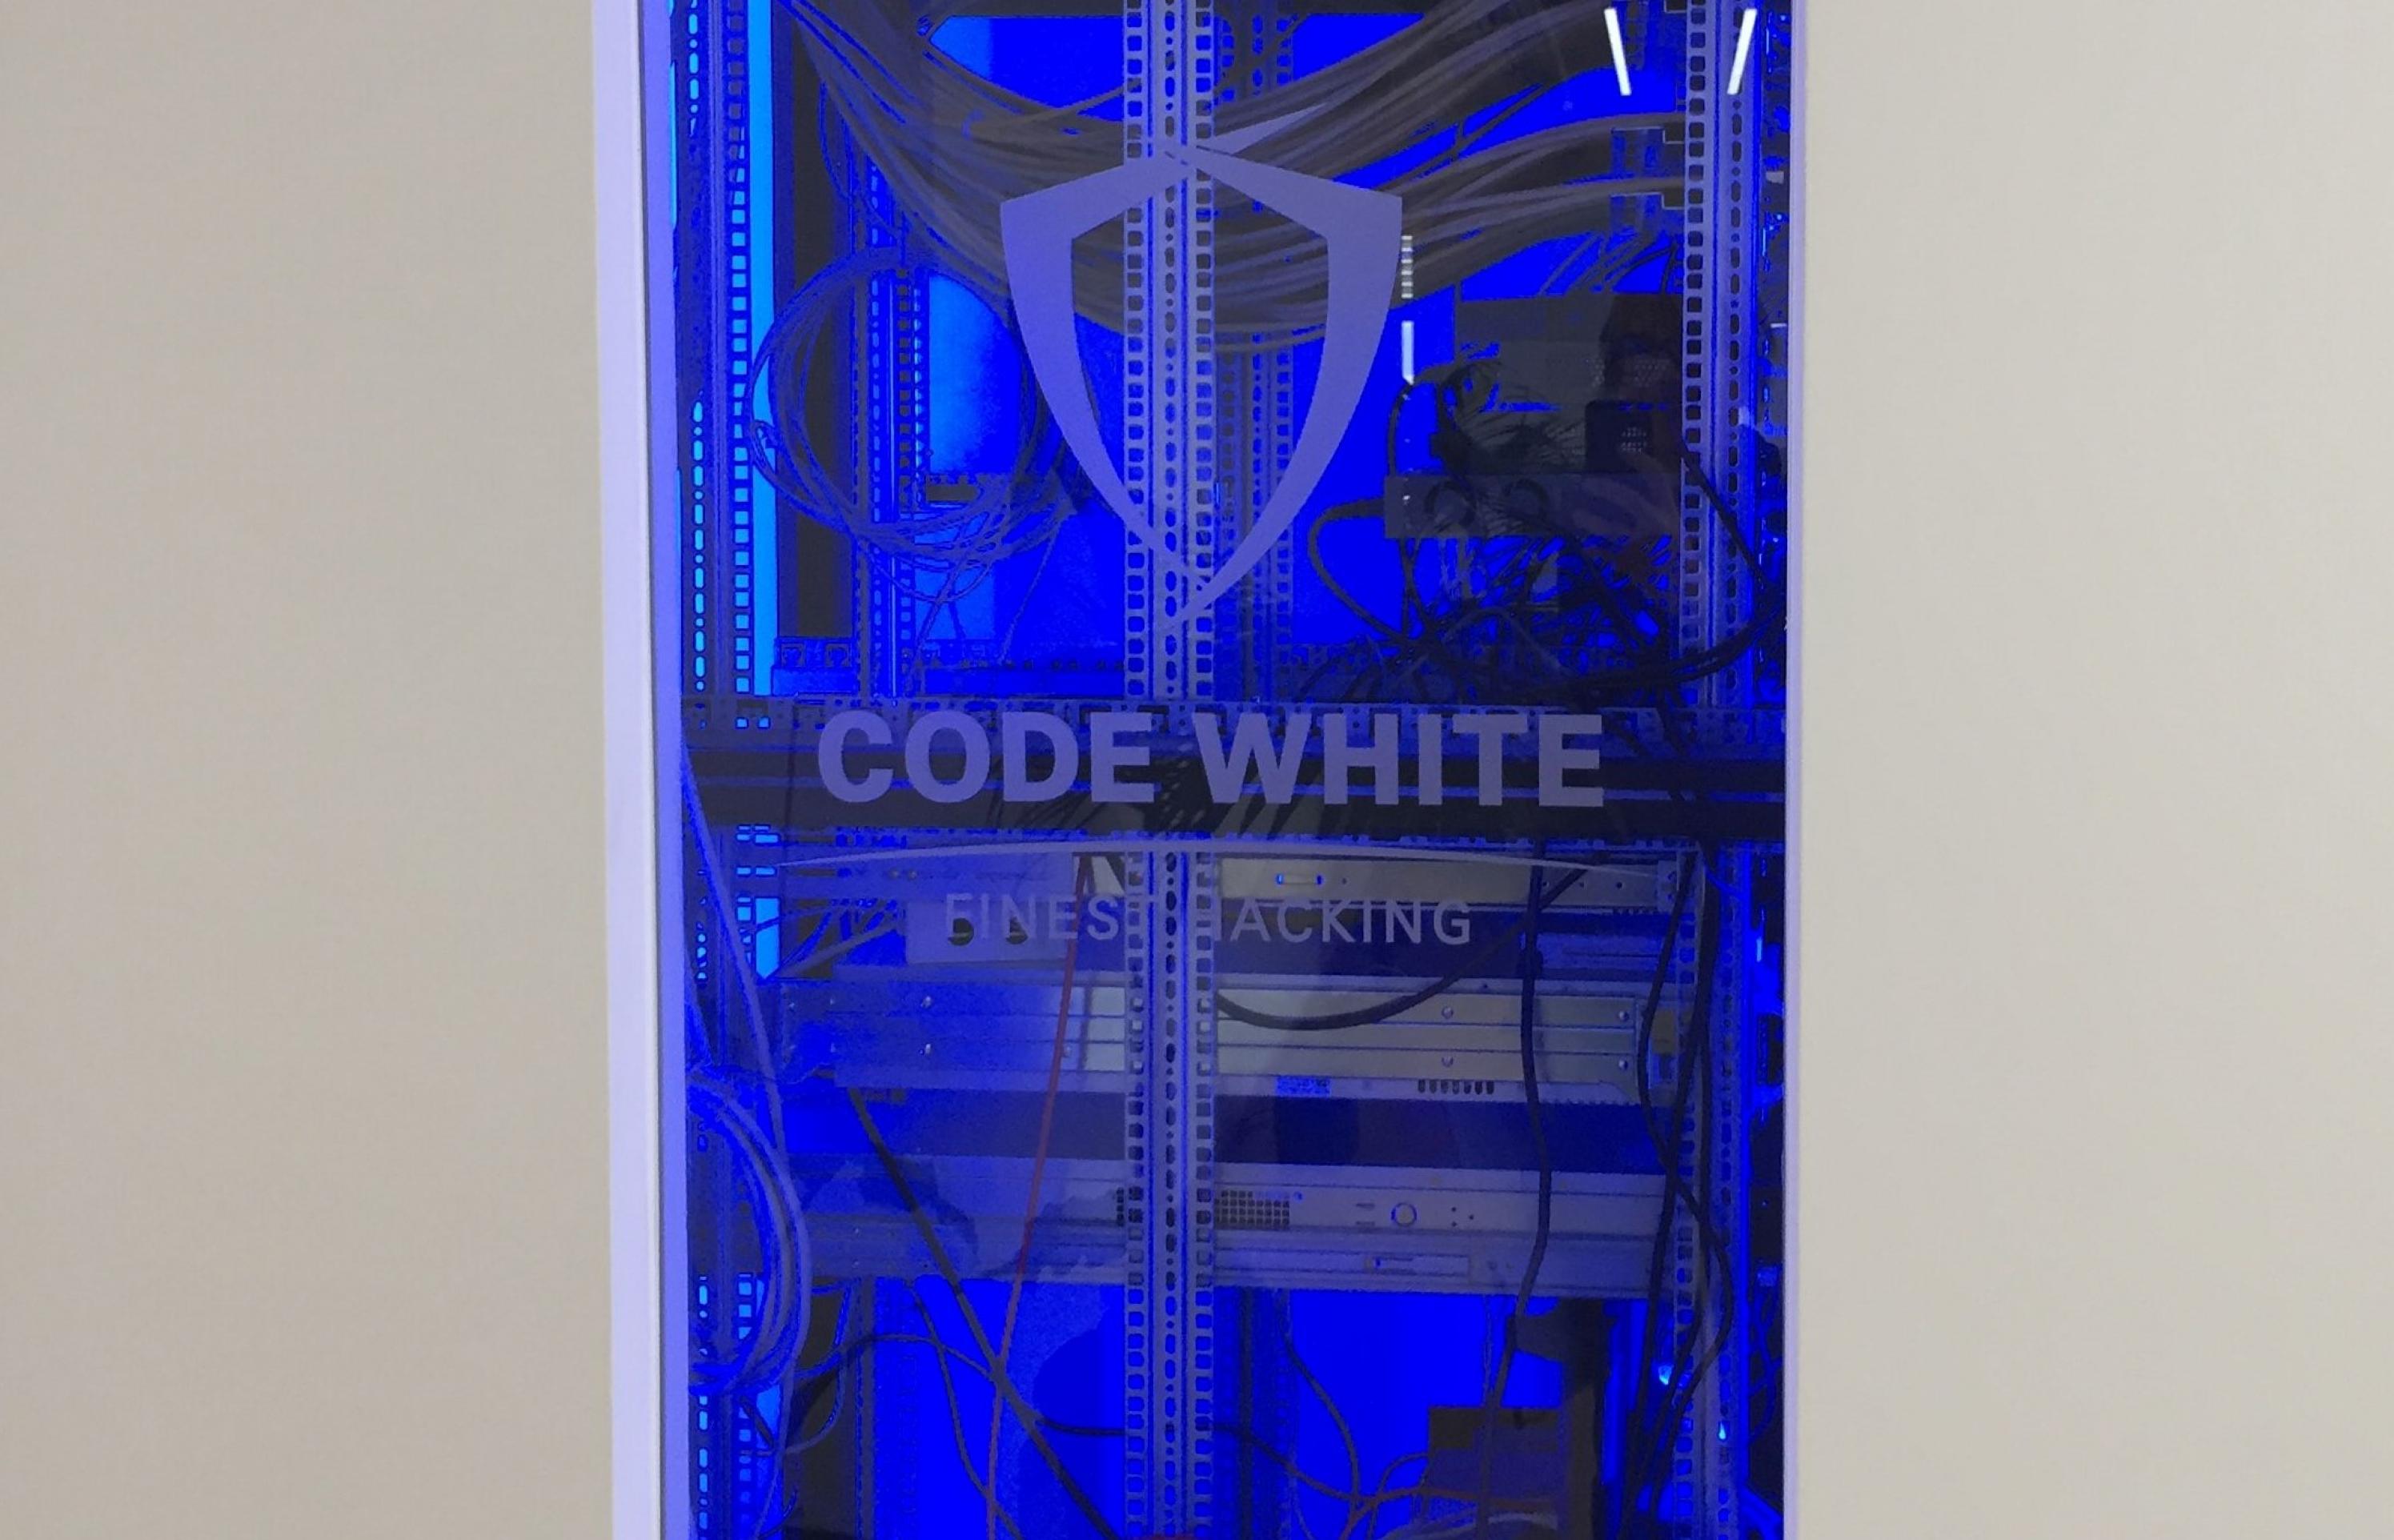 Ein großer Serverschrank, auf dessen Glastür das Firmenlogo eingraviert ist, wurde in eine weiße Wand eingelassen. Das Innere des Schrankes ist komplett in kaltes blaues Licht getaucht. In ihm befindet sich, umgeben von einer Menge Kabel, ein wuchtiger Hochleistungscomputer in einem unspektakulären Metallgehäuse.